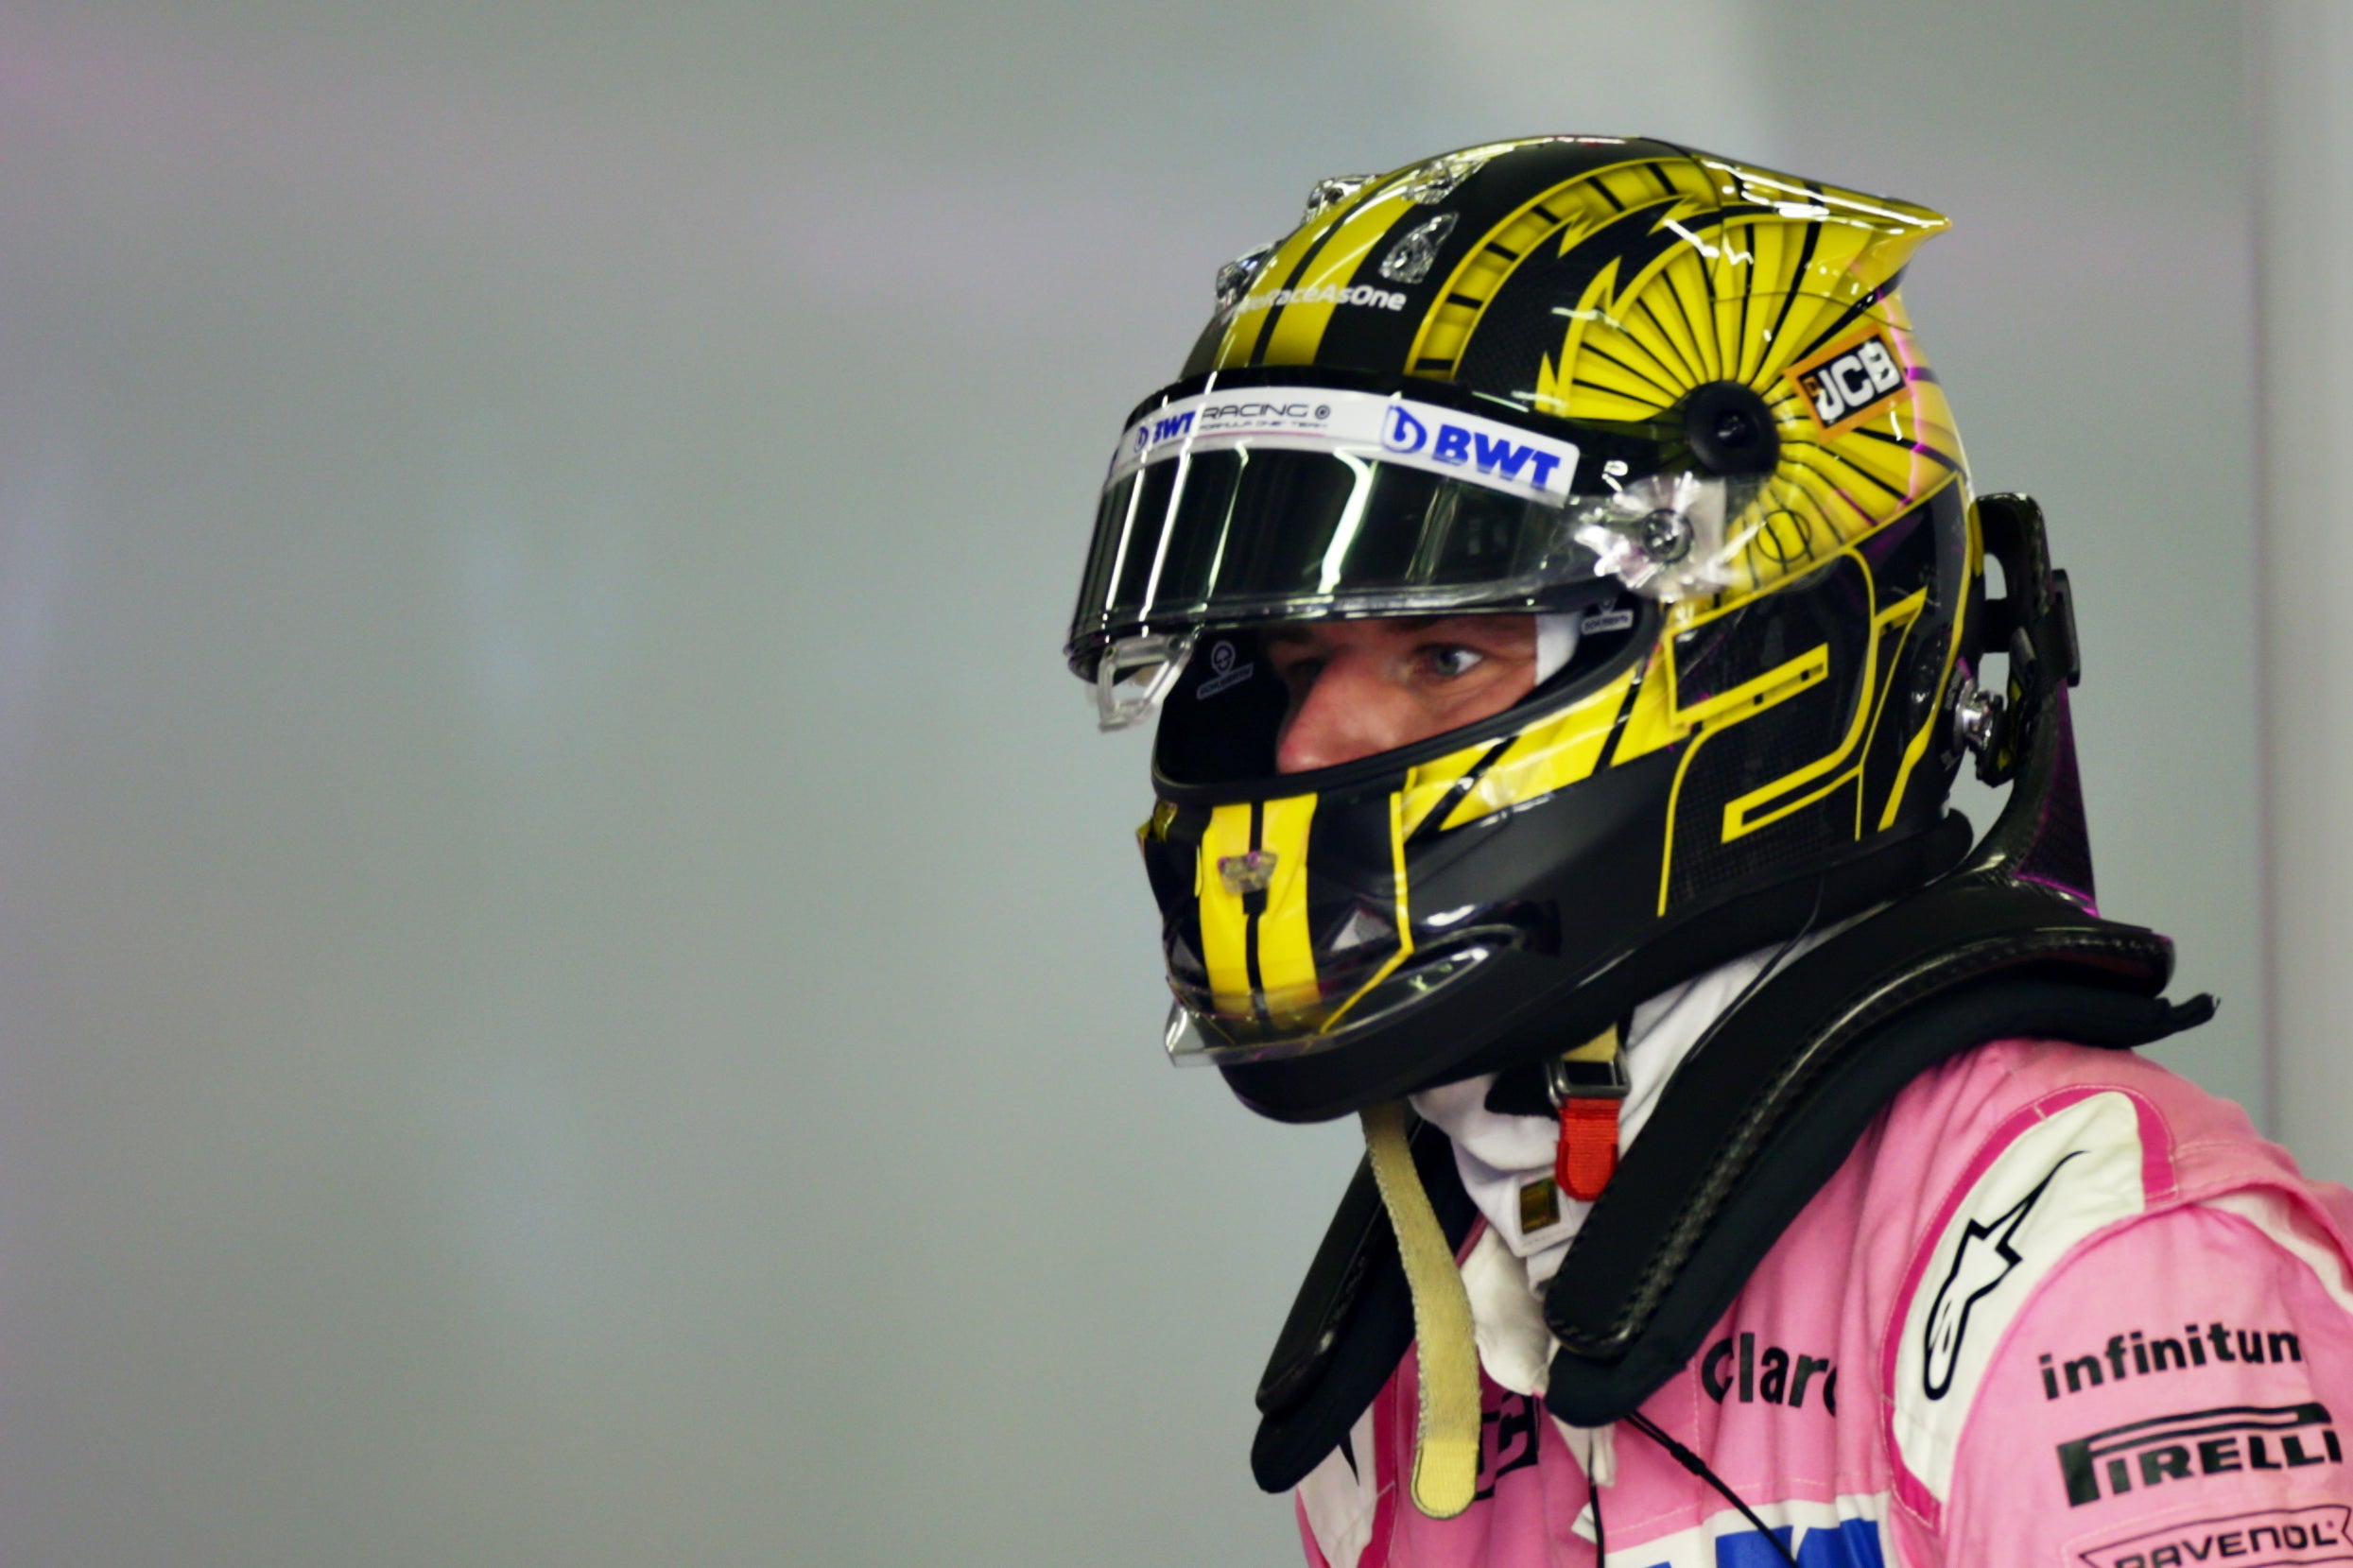 Nico Hulkenberg had an underwhelming F1 career